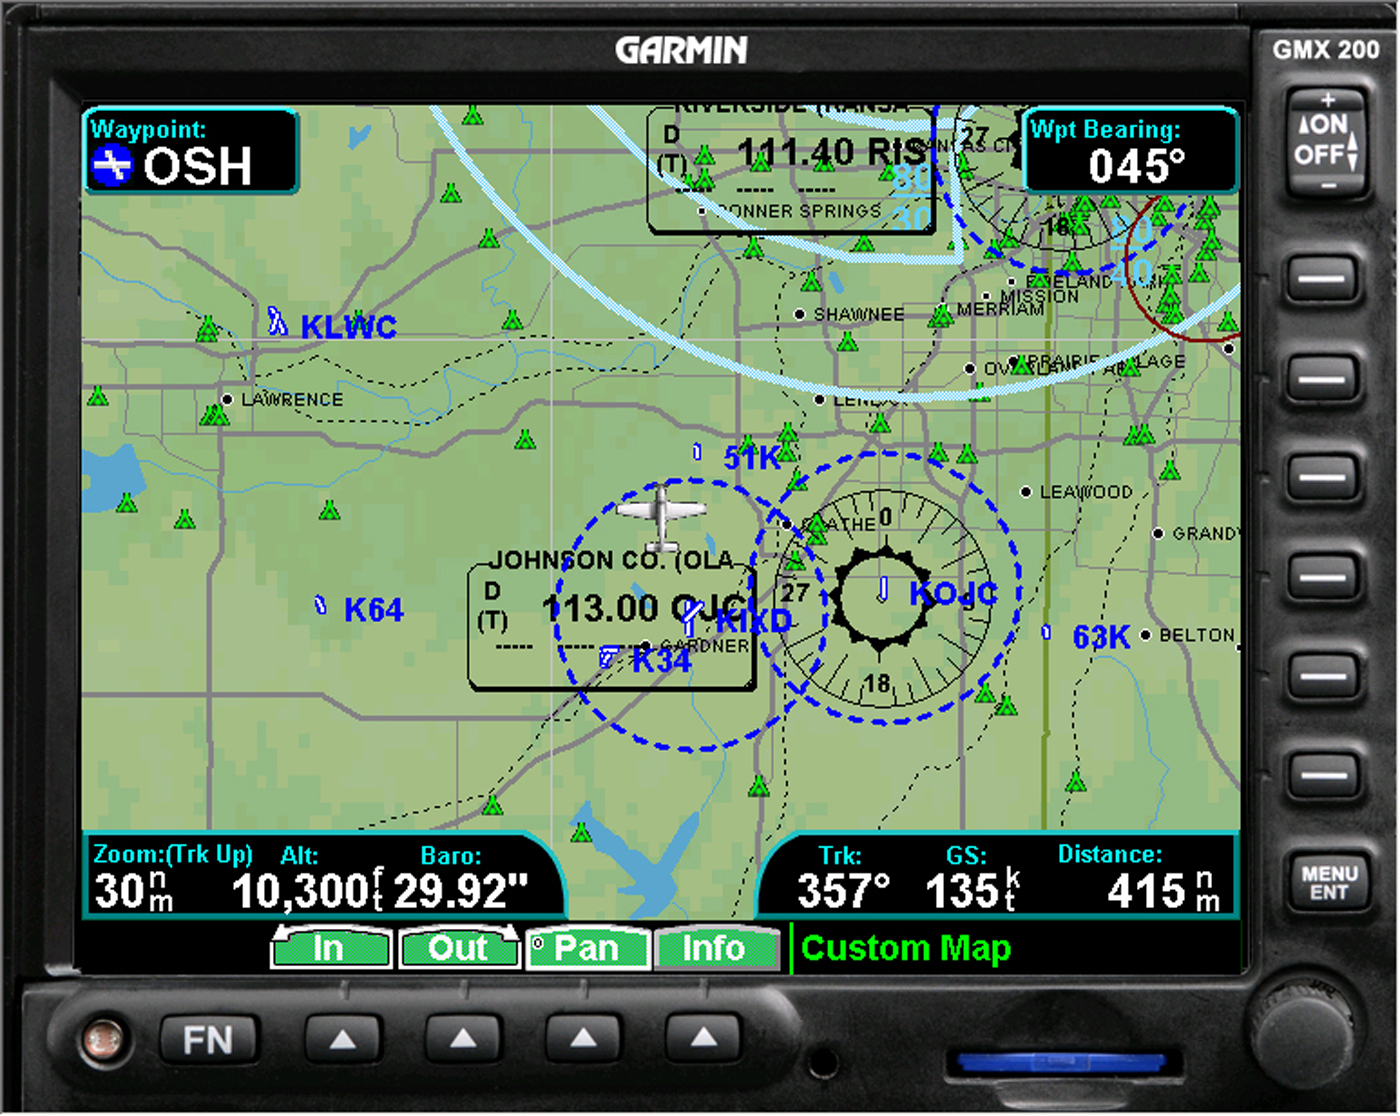 Garmin support. Garmin MFD. Garmin авиационные карты. Отображение информации на MFD Garmin.